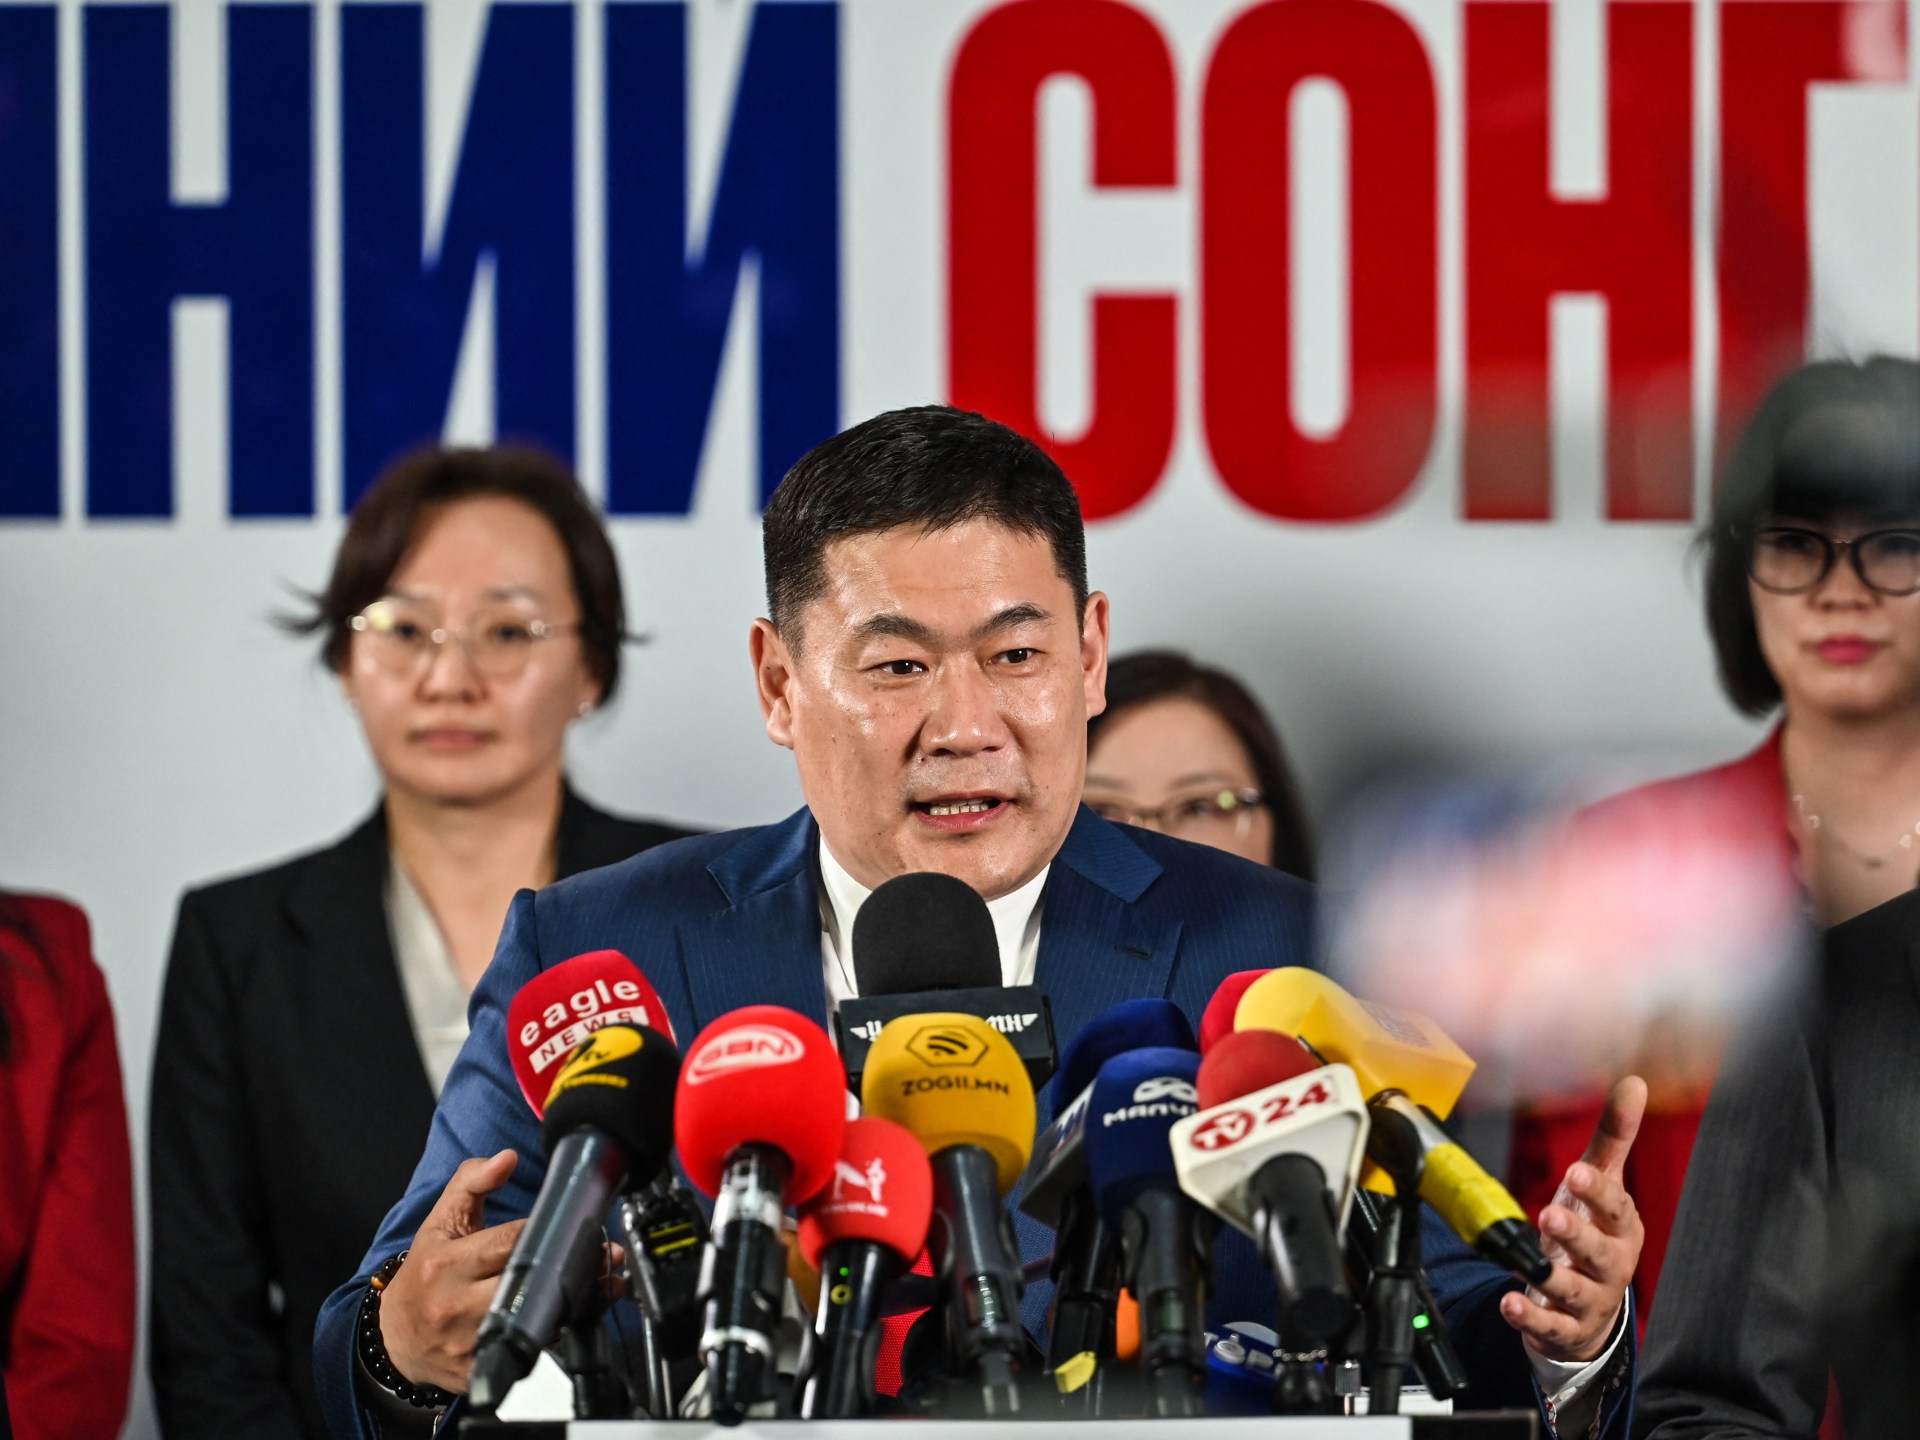 النتائج الأولية للانتخابات تظهر تقدم حزب الشعب المنغولي |  أخبار الانتخابات